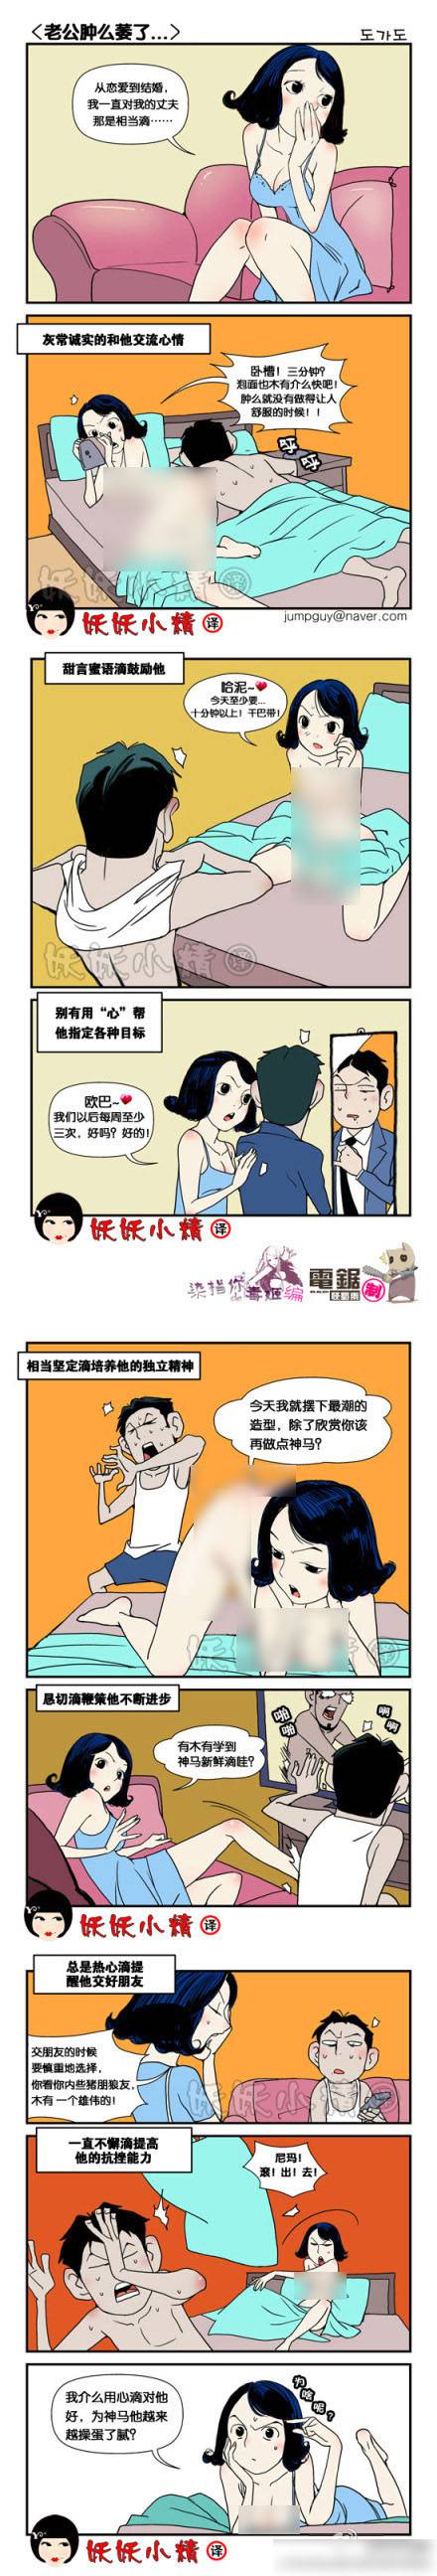 邪恶漫画爆笑囧图第47刊：牛奶